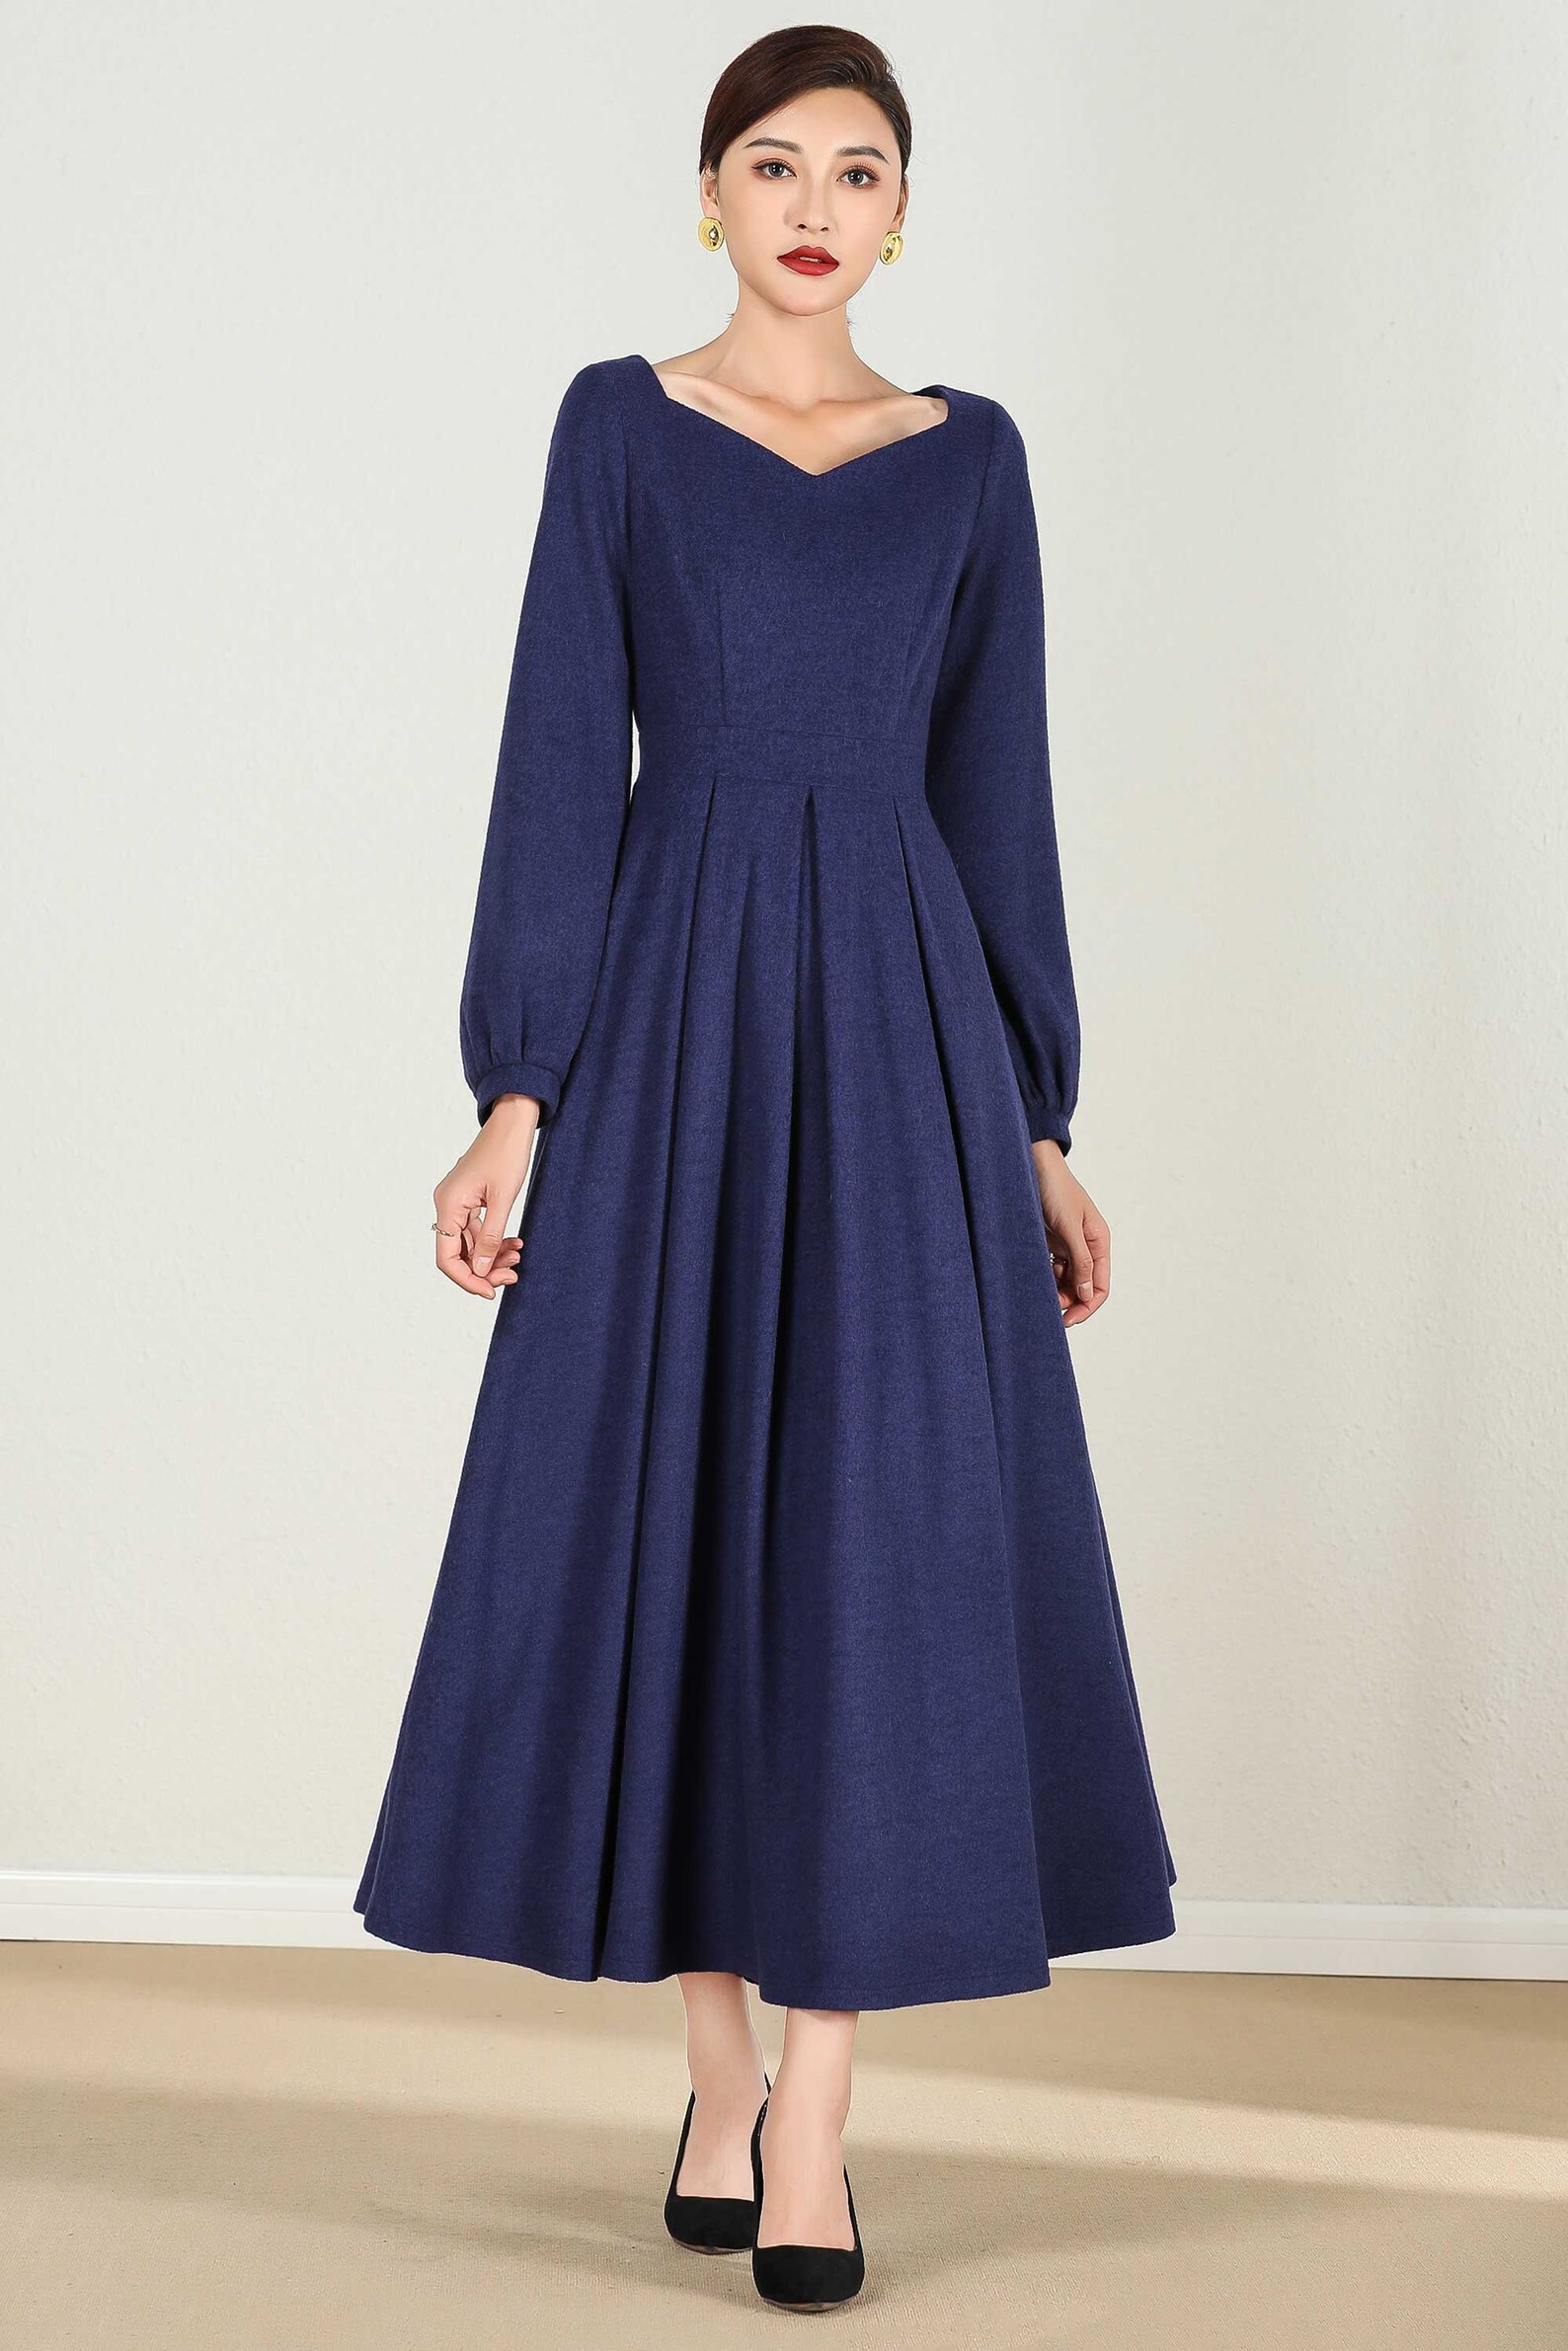 Long Wool Maxi Dress Long Sleeve Wool Dress Blue Wool Dress - Etsy